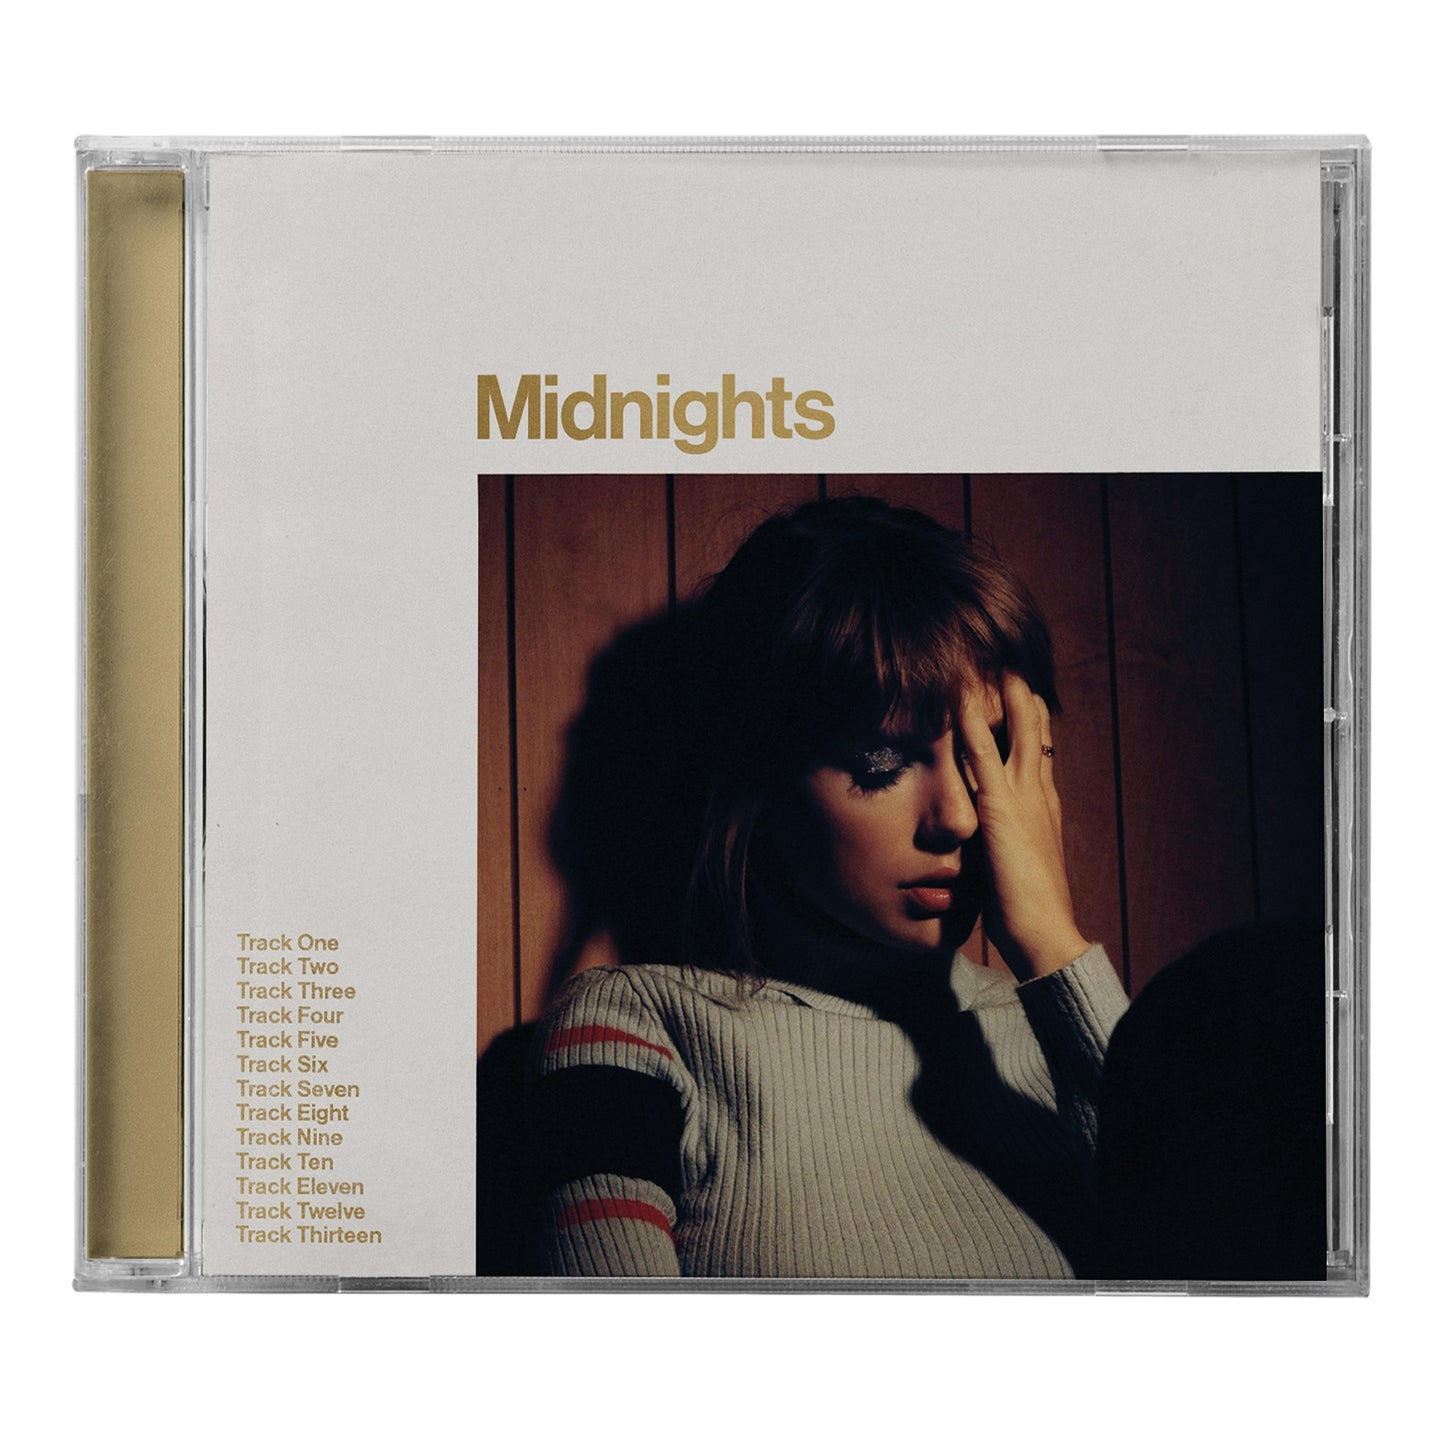 Midnights [Mahogany Edition]